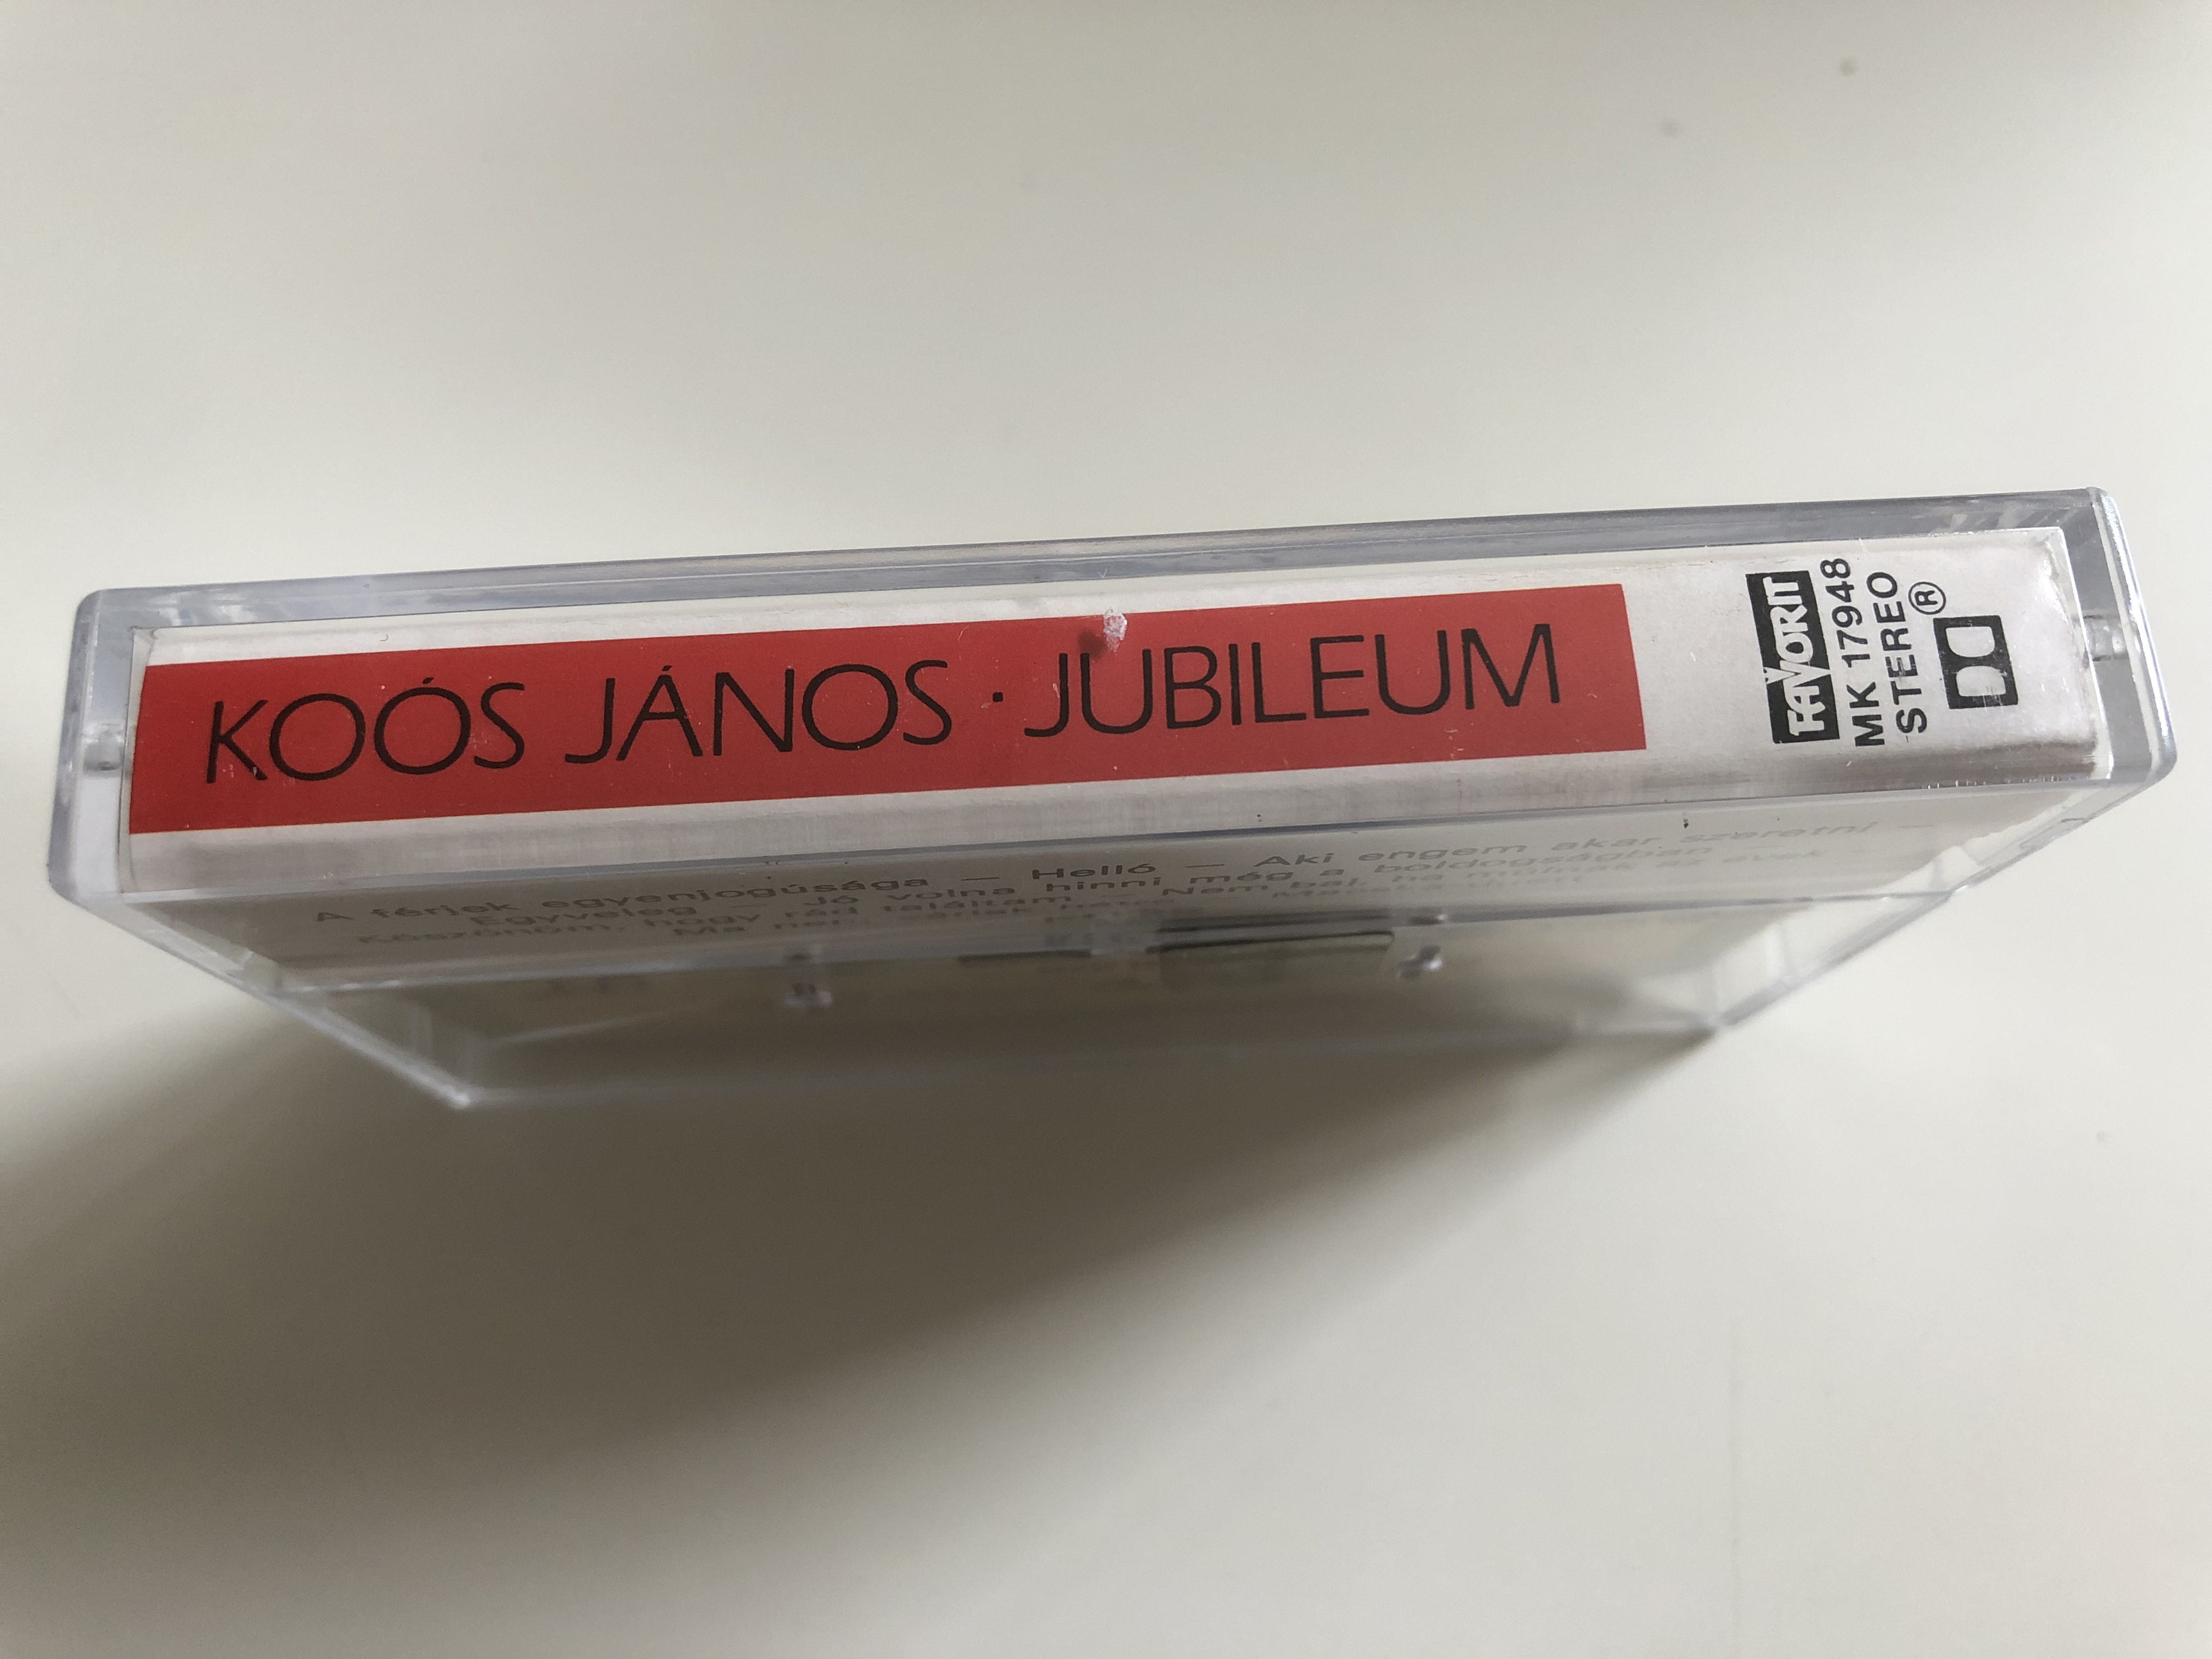 ko-s-j-nos-jubileum-favorit-cassette-stereo-mk-17948-4-.jpg